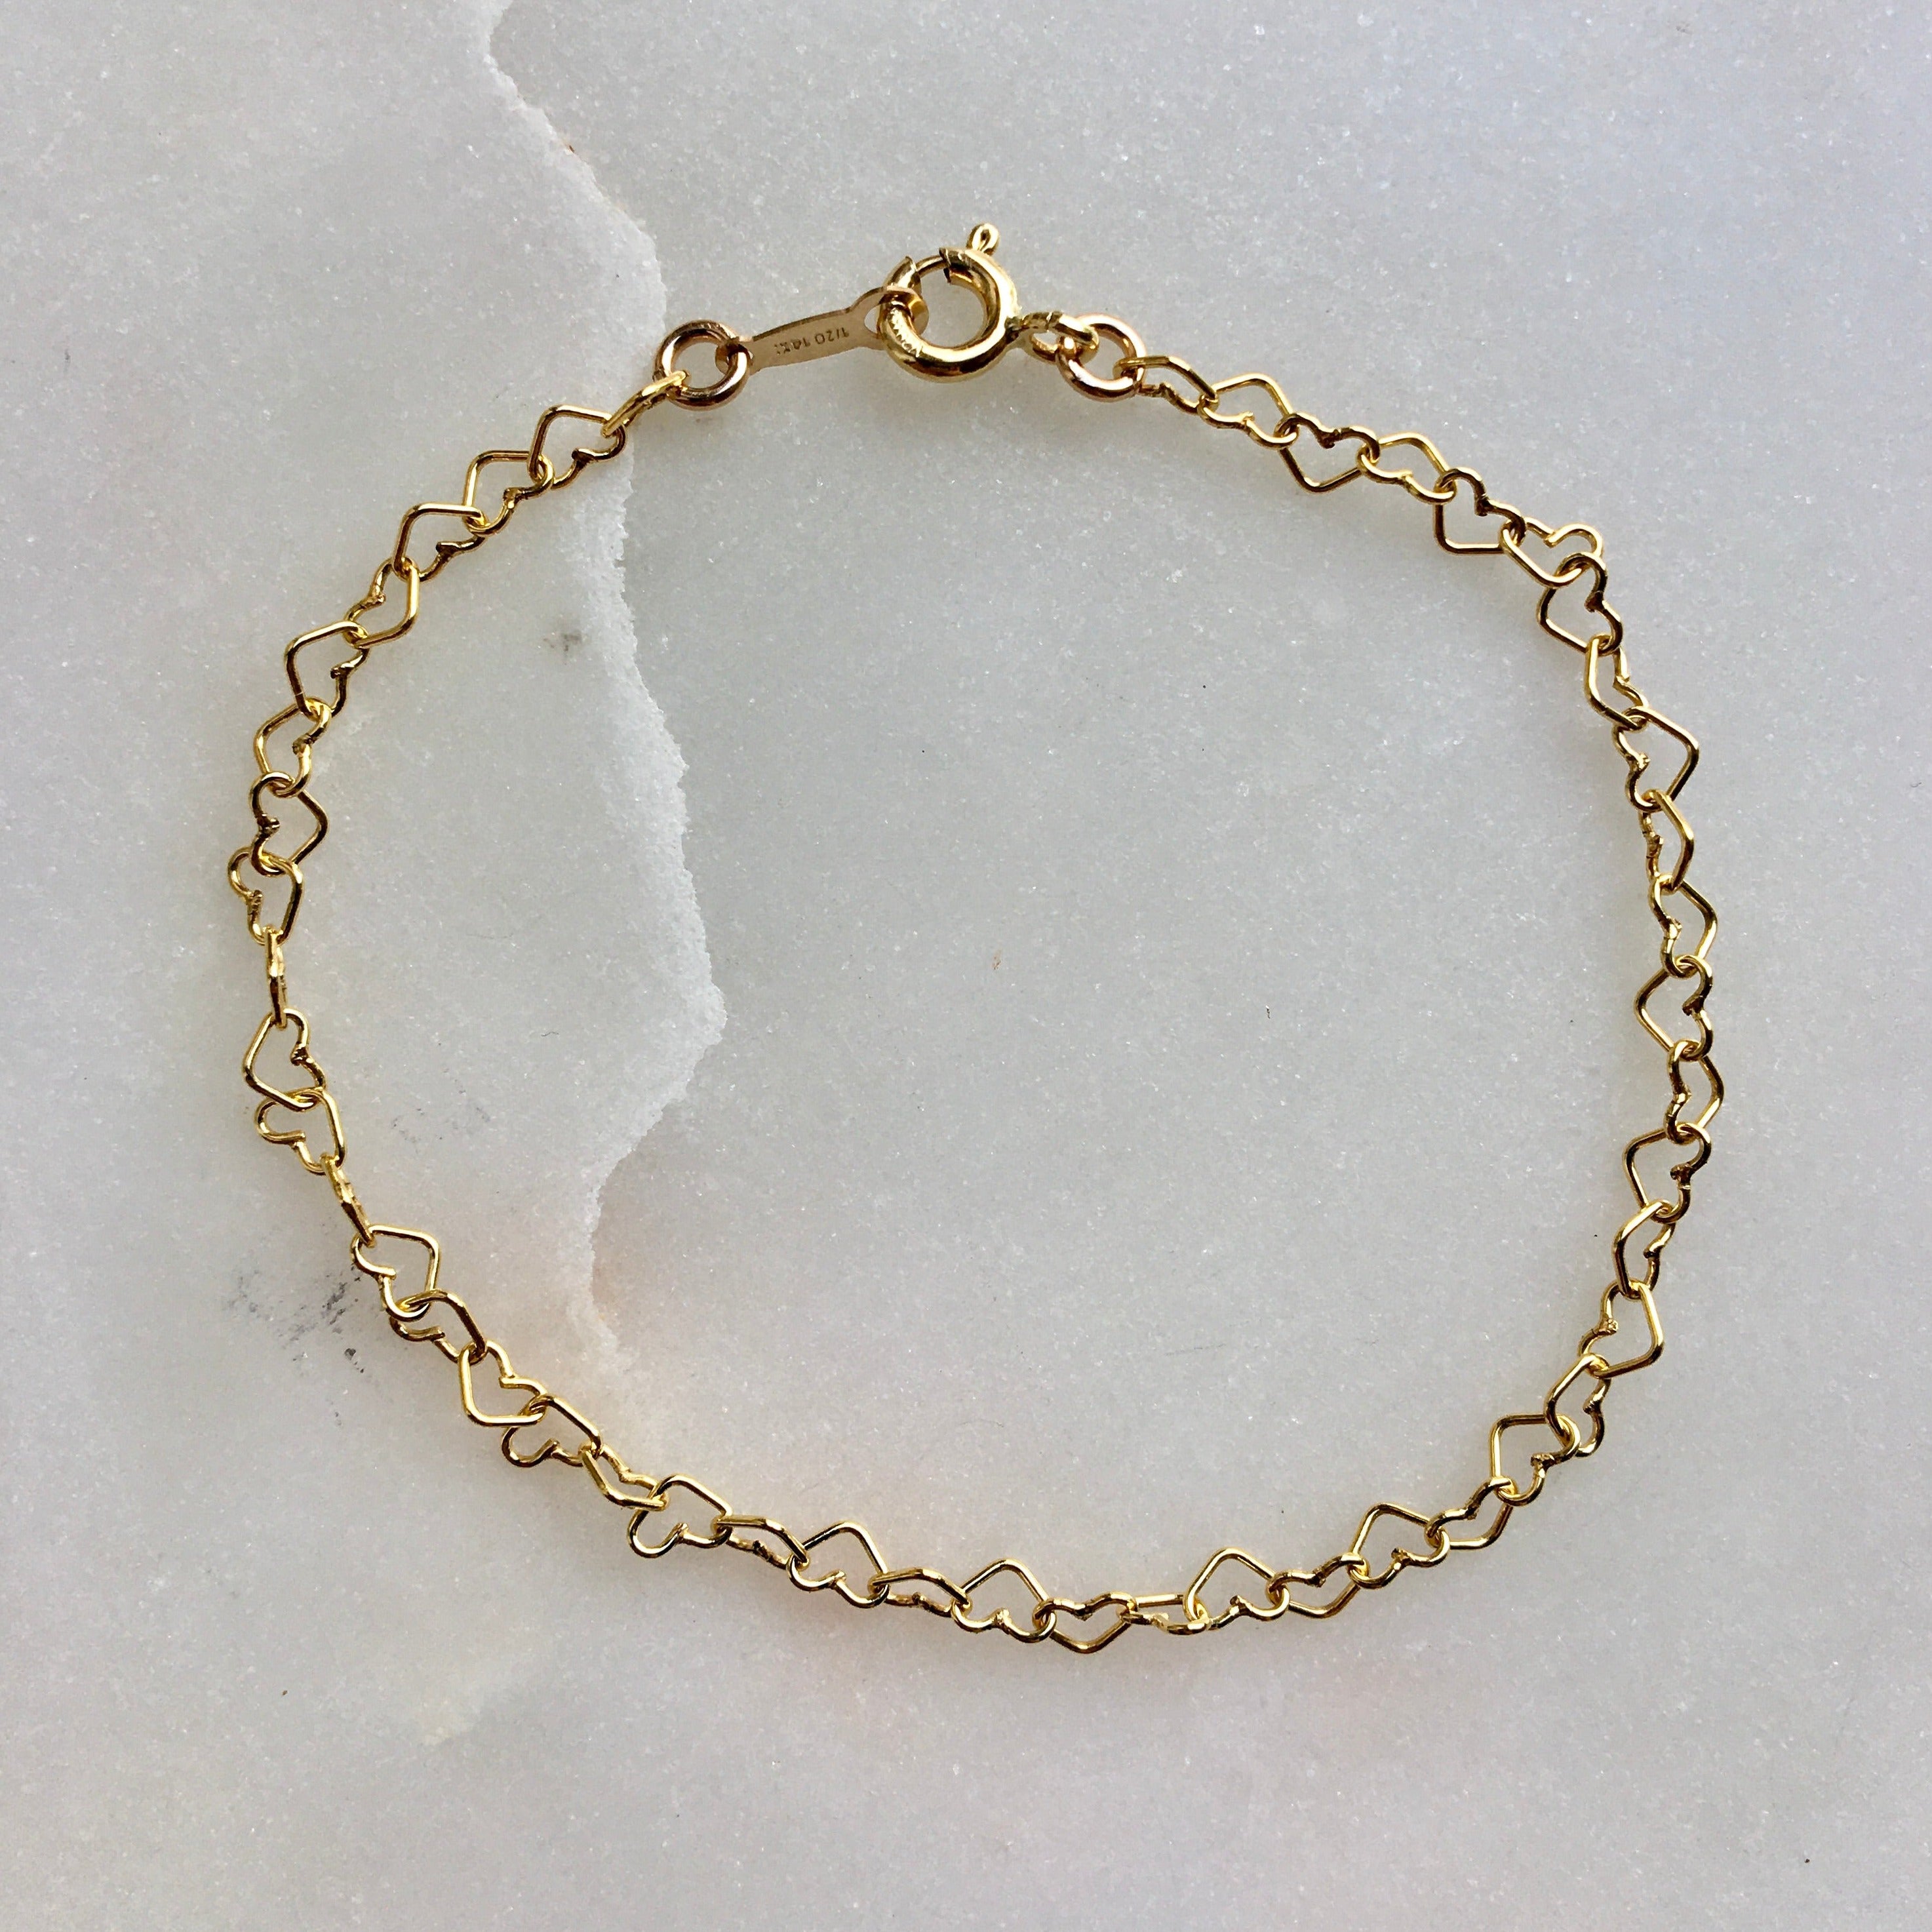 Gold & Diamond Bracelet Designs For Women - PC Chandra